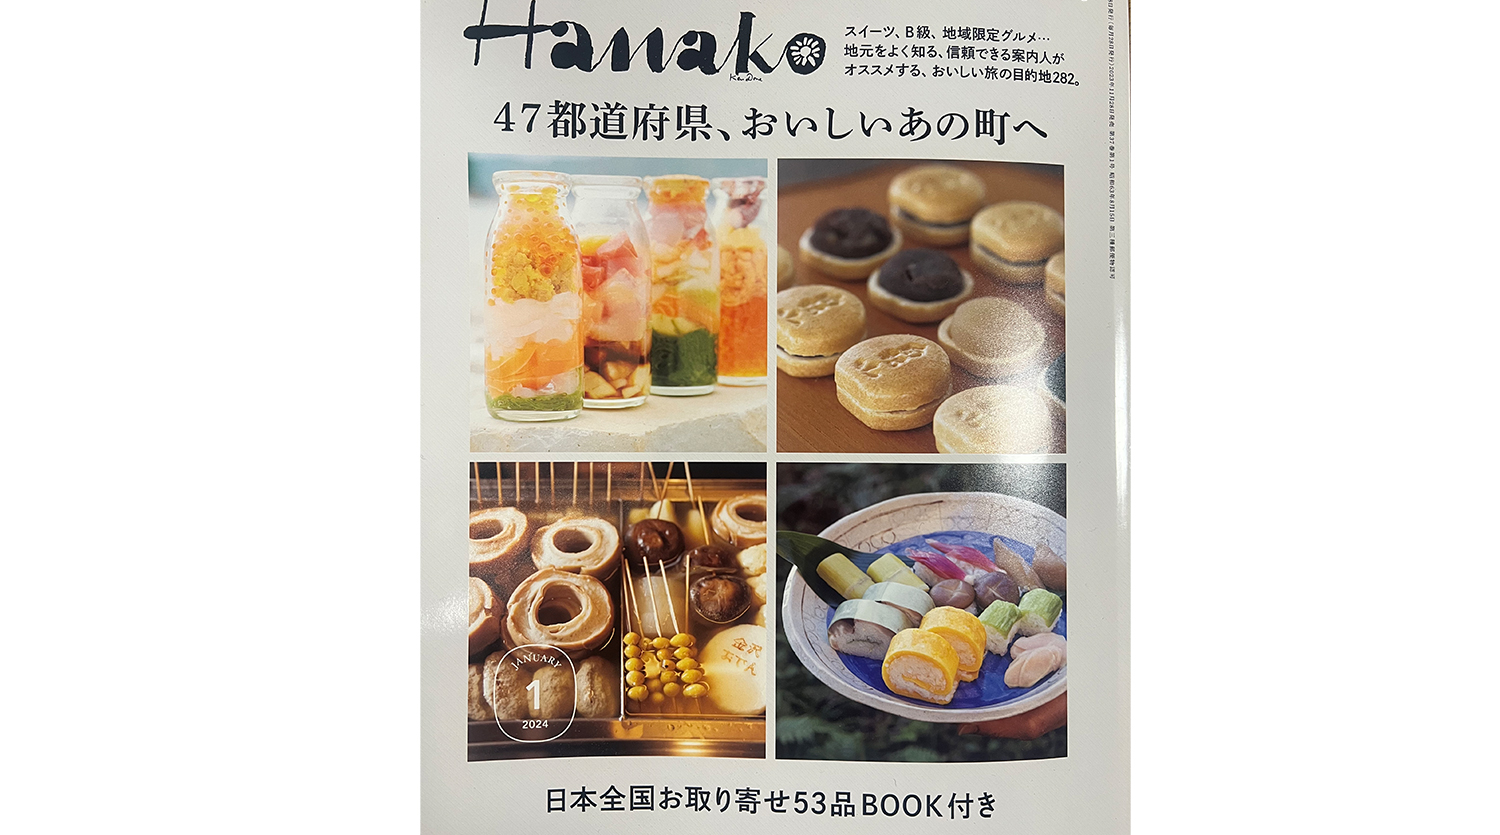 雑誌「Hanako」に掲載いただきました